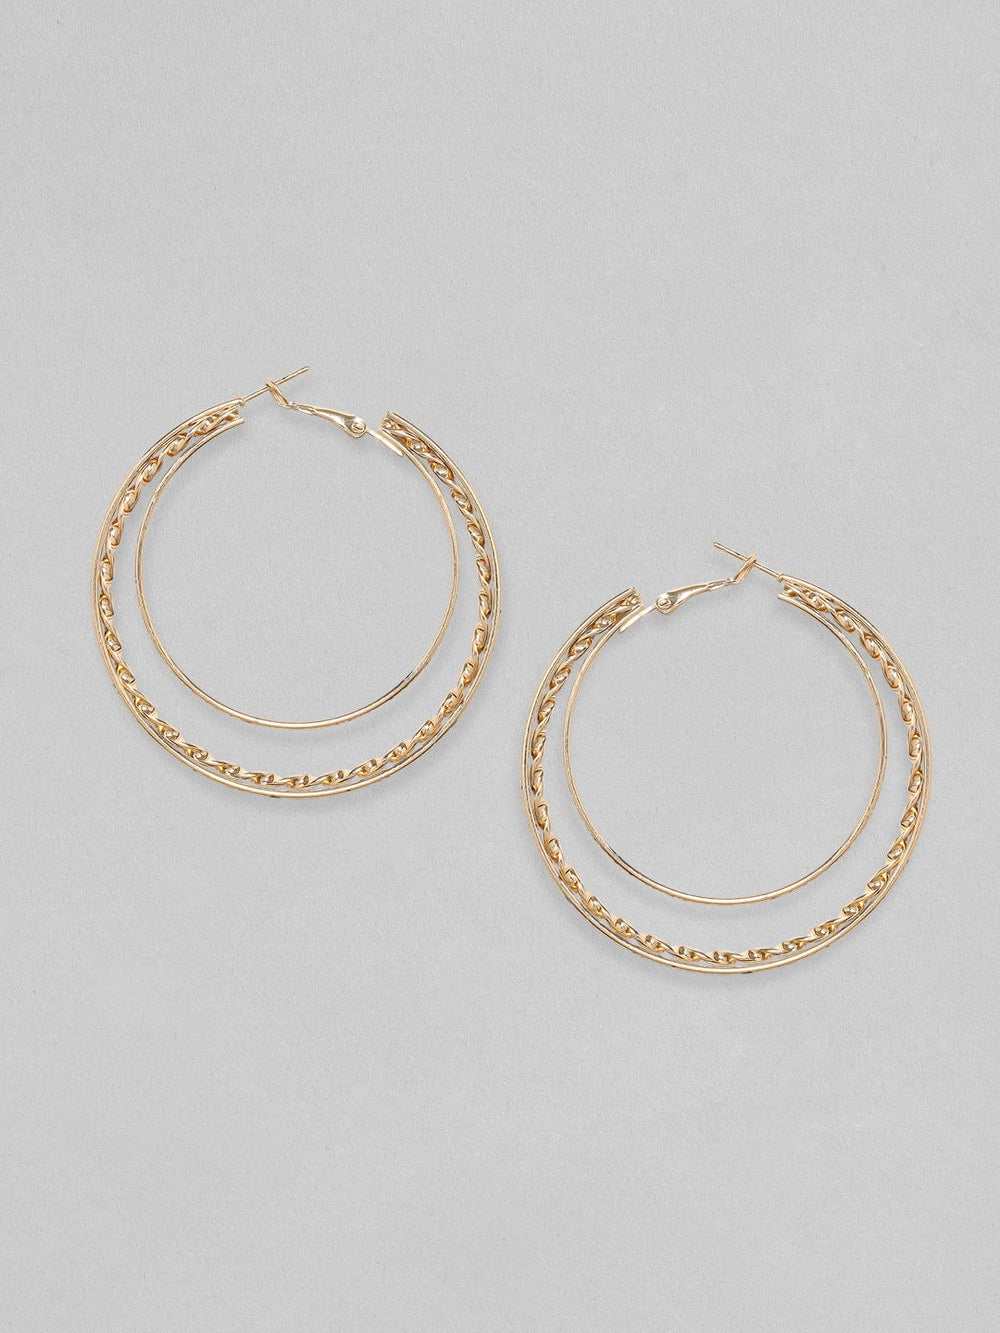 Rubans Voguish Gold-Plated Circular Hoop Earrings Earrings